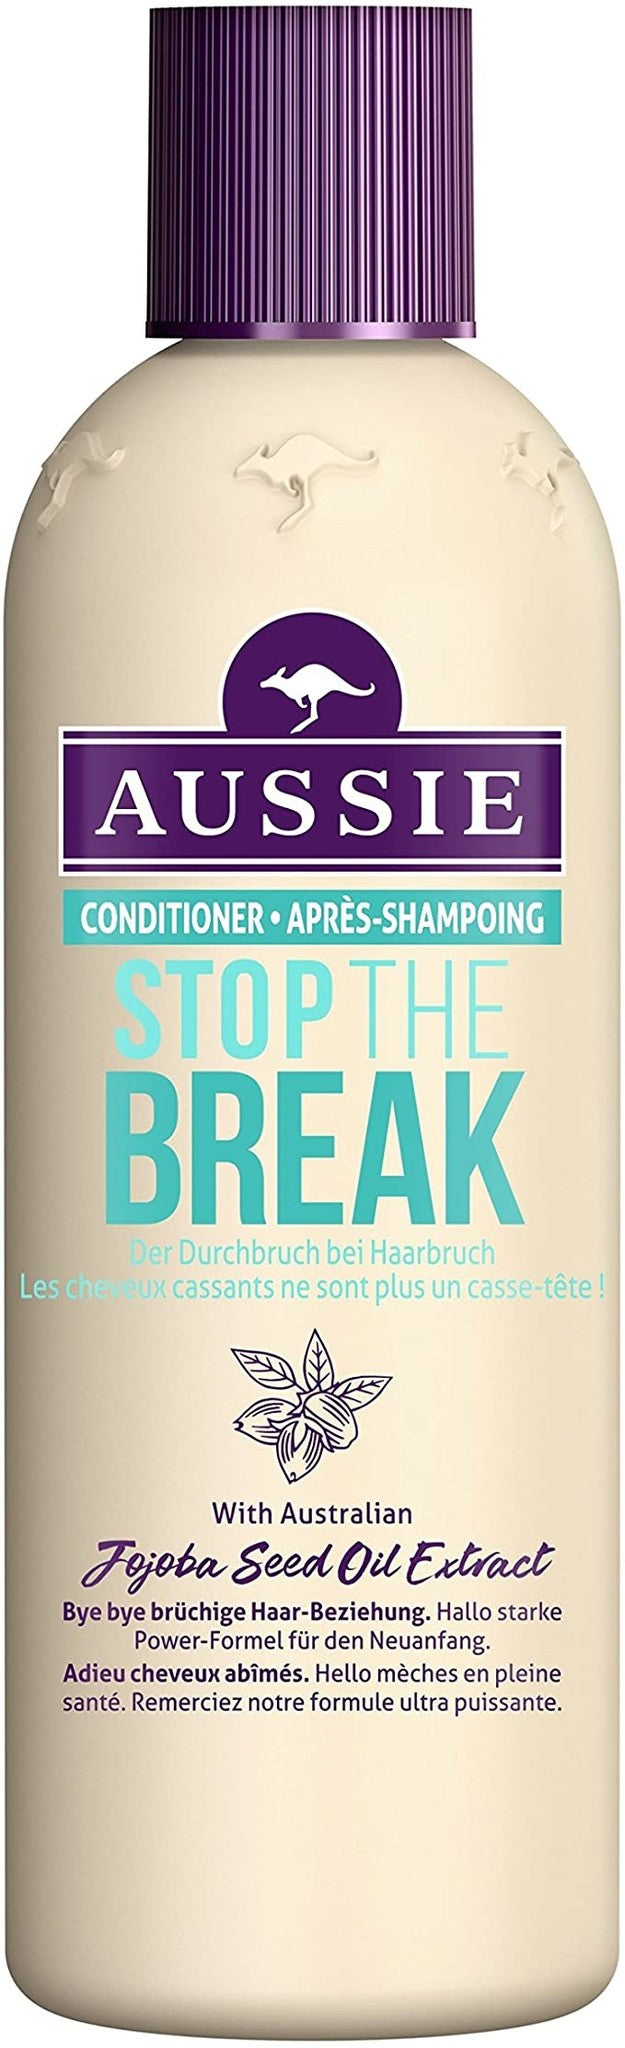 Aussie - Stop The Break Conditioner 250ml 